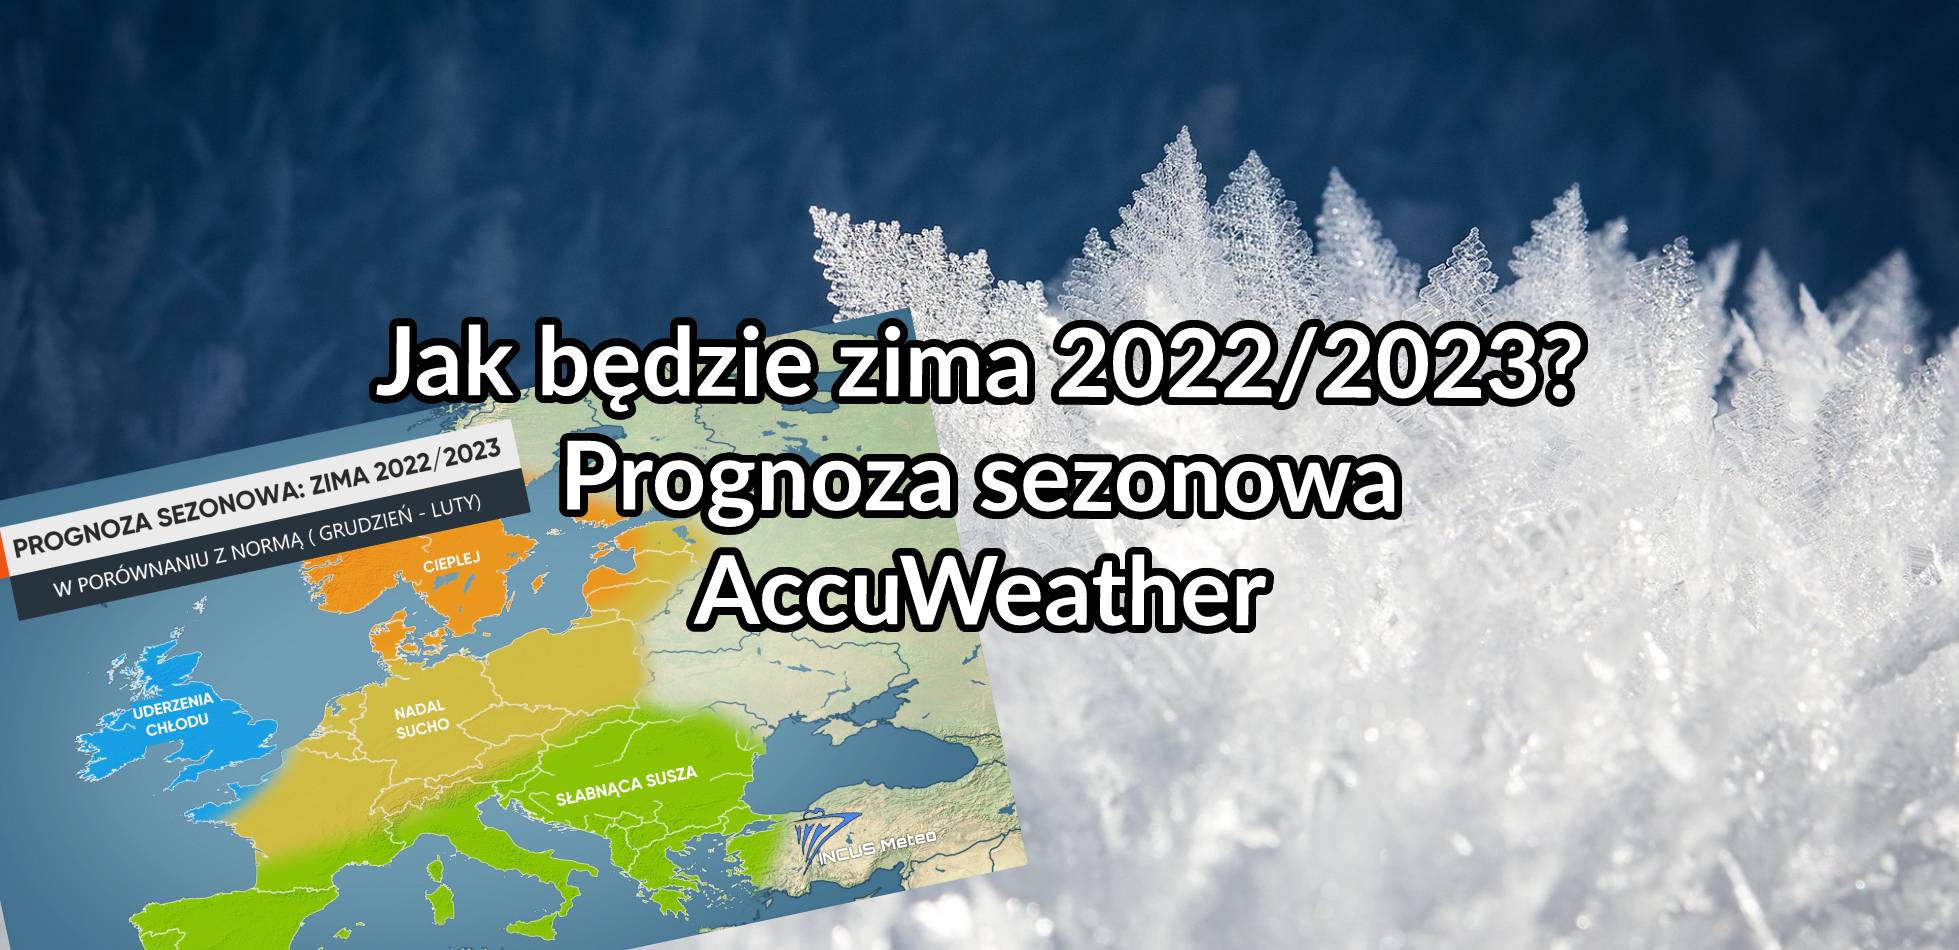 Jak będzie zima 2022/2023? Prognoza sezonowa AccuWeather